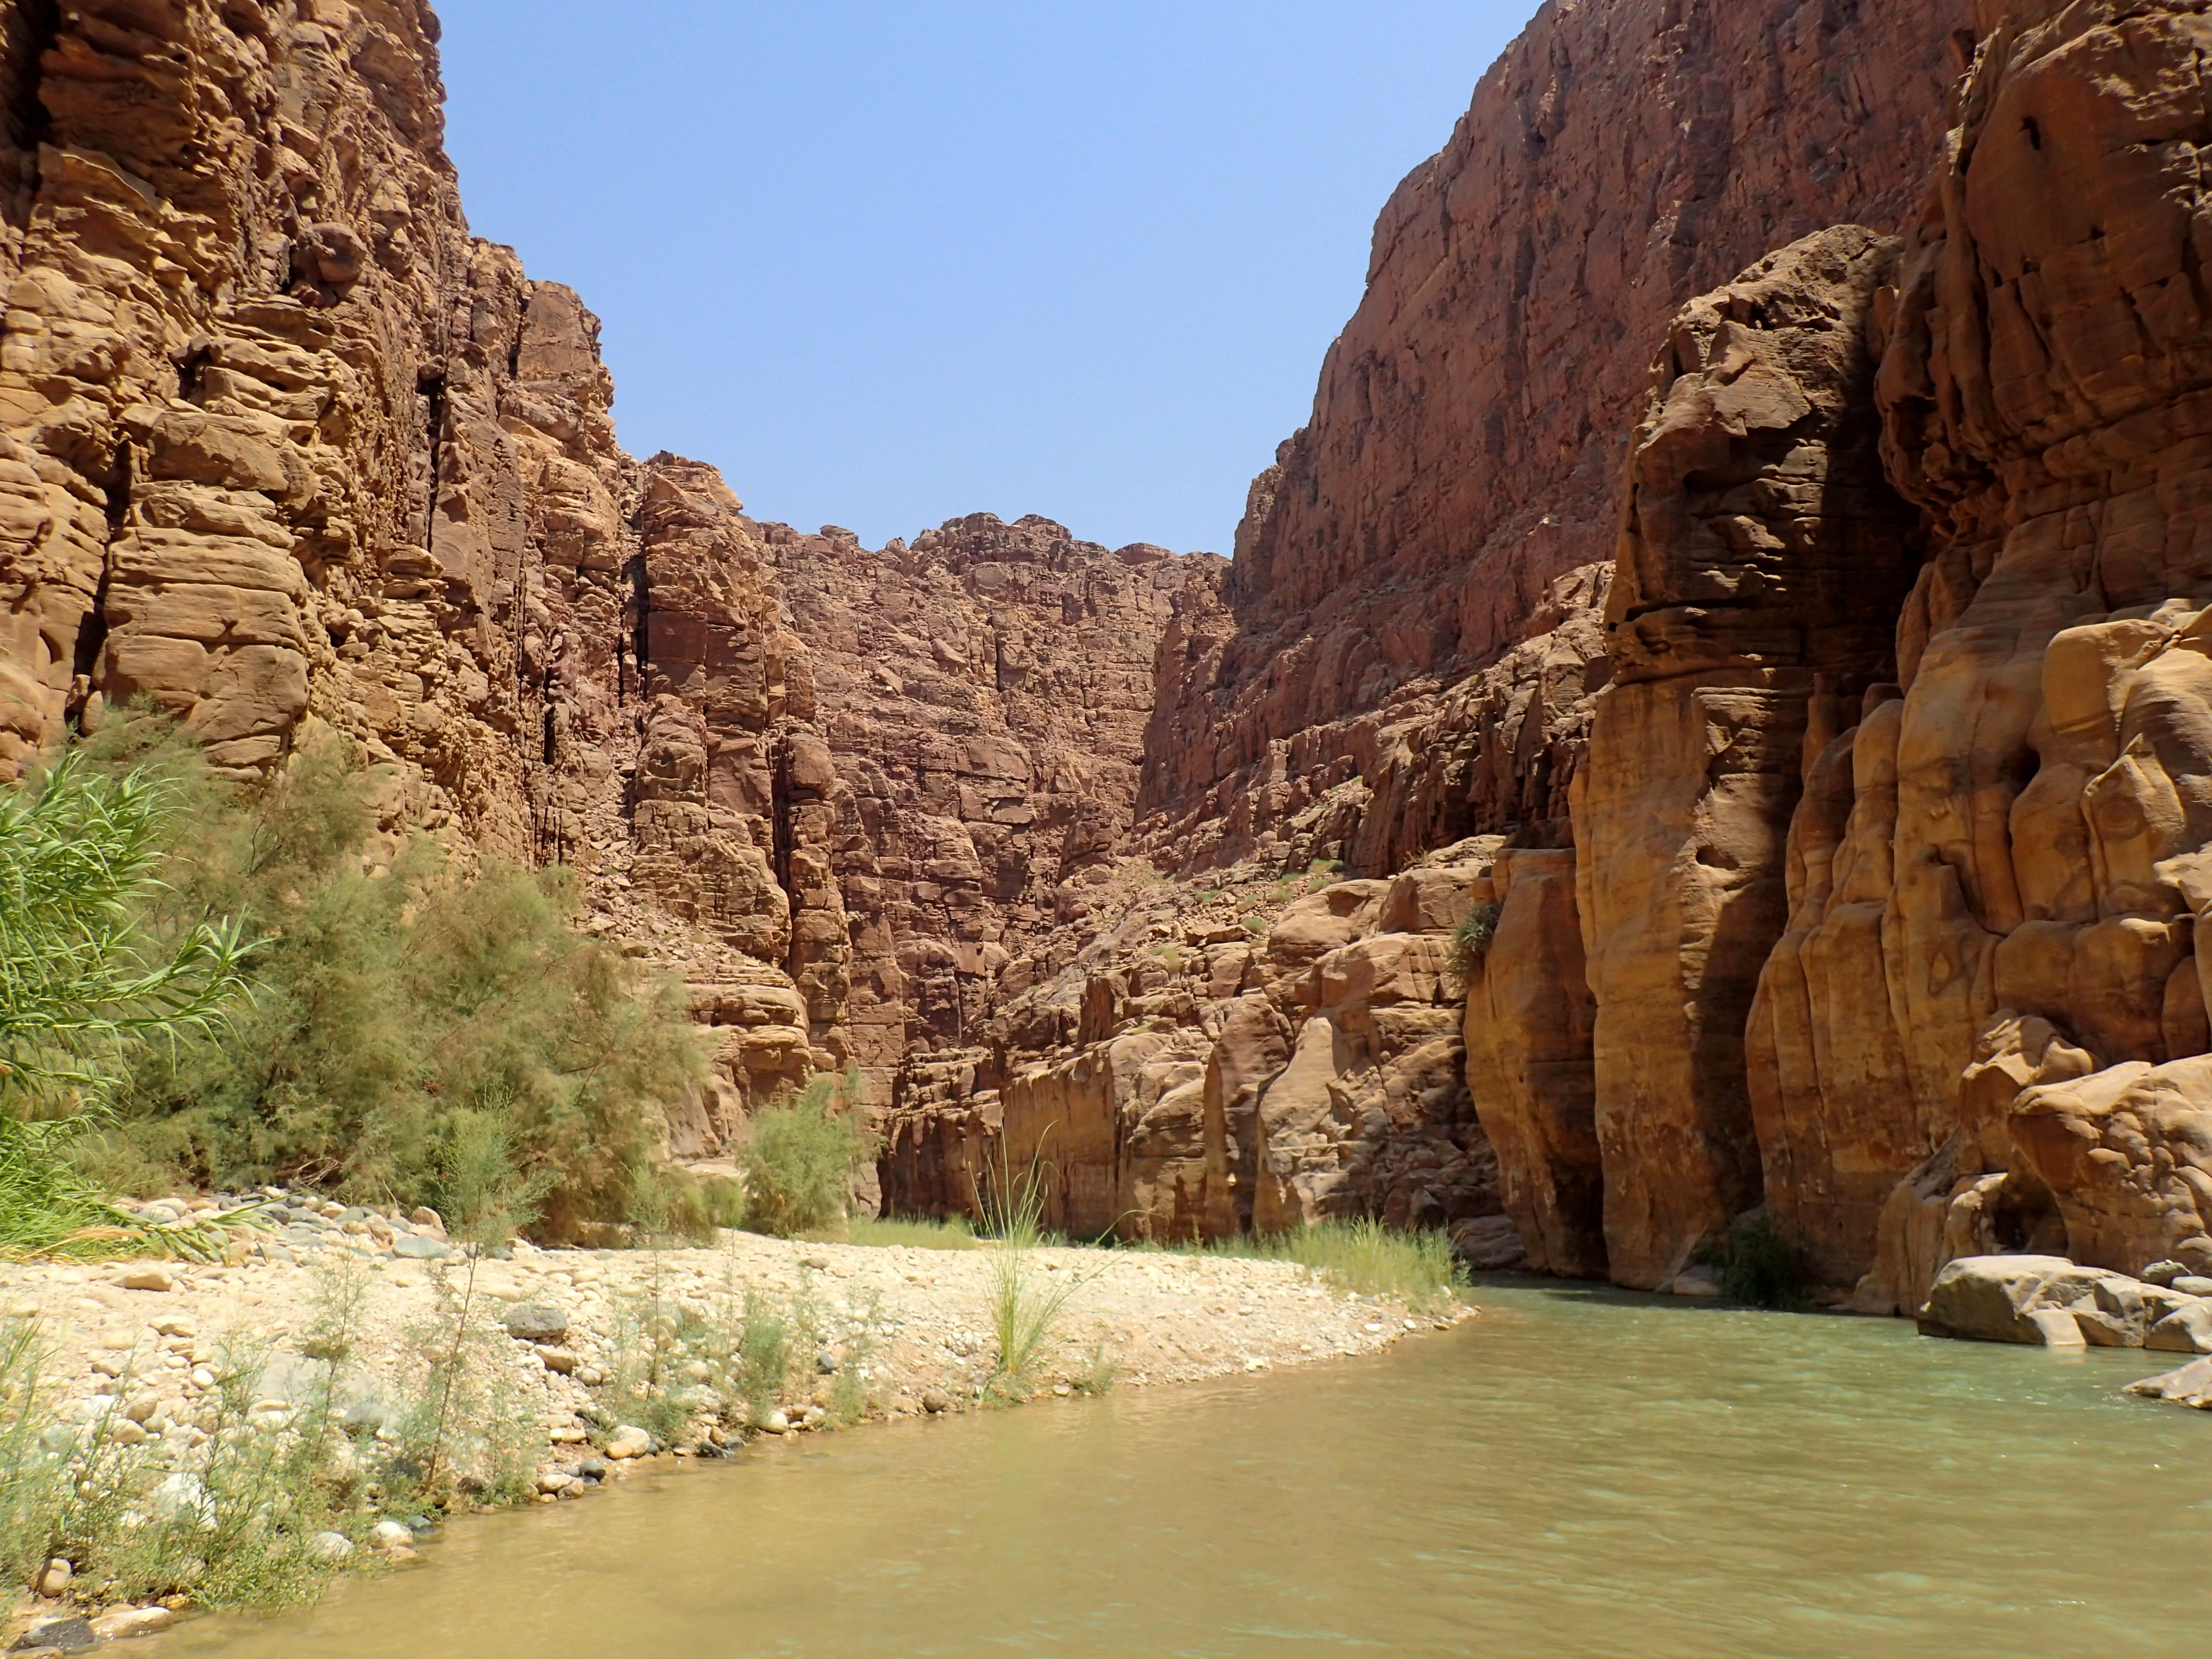 Canyoning in the Wadi Mujib, Jordan